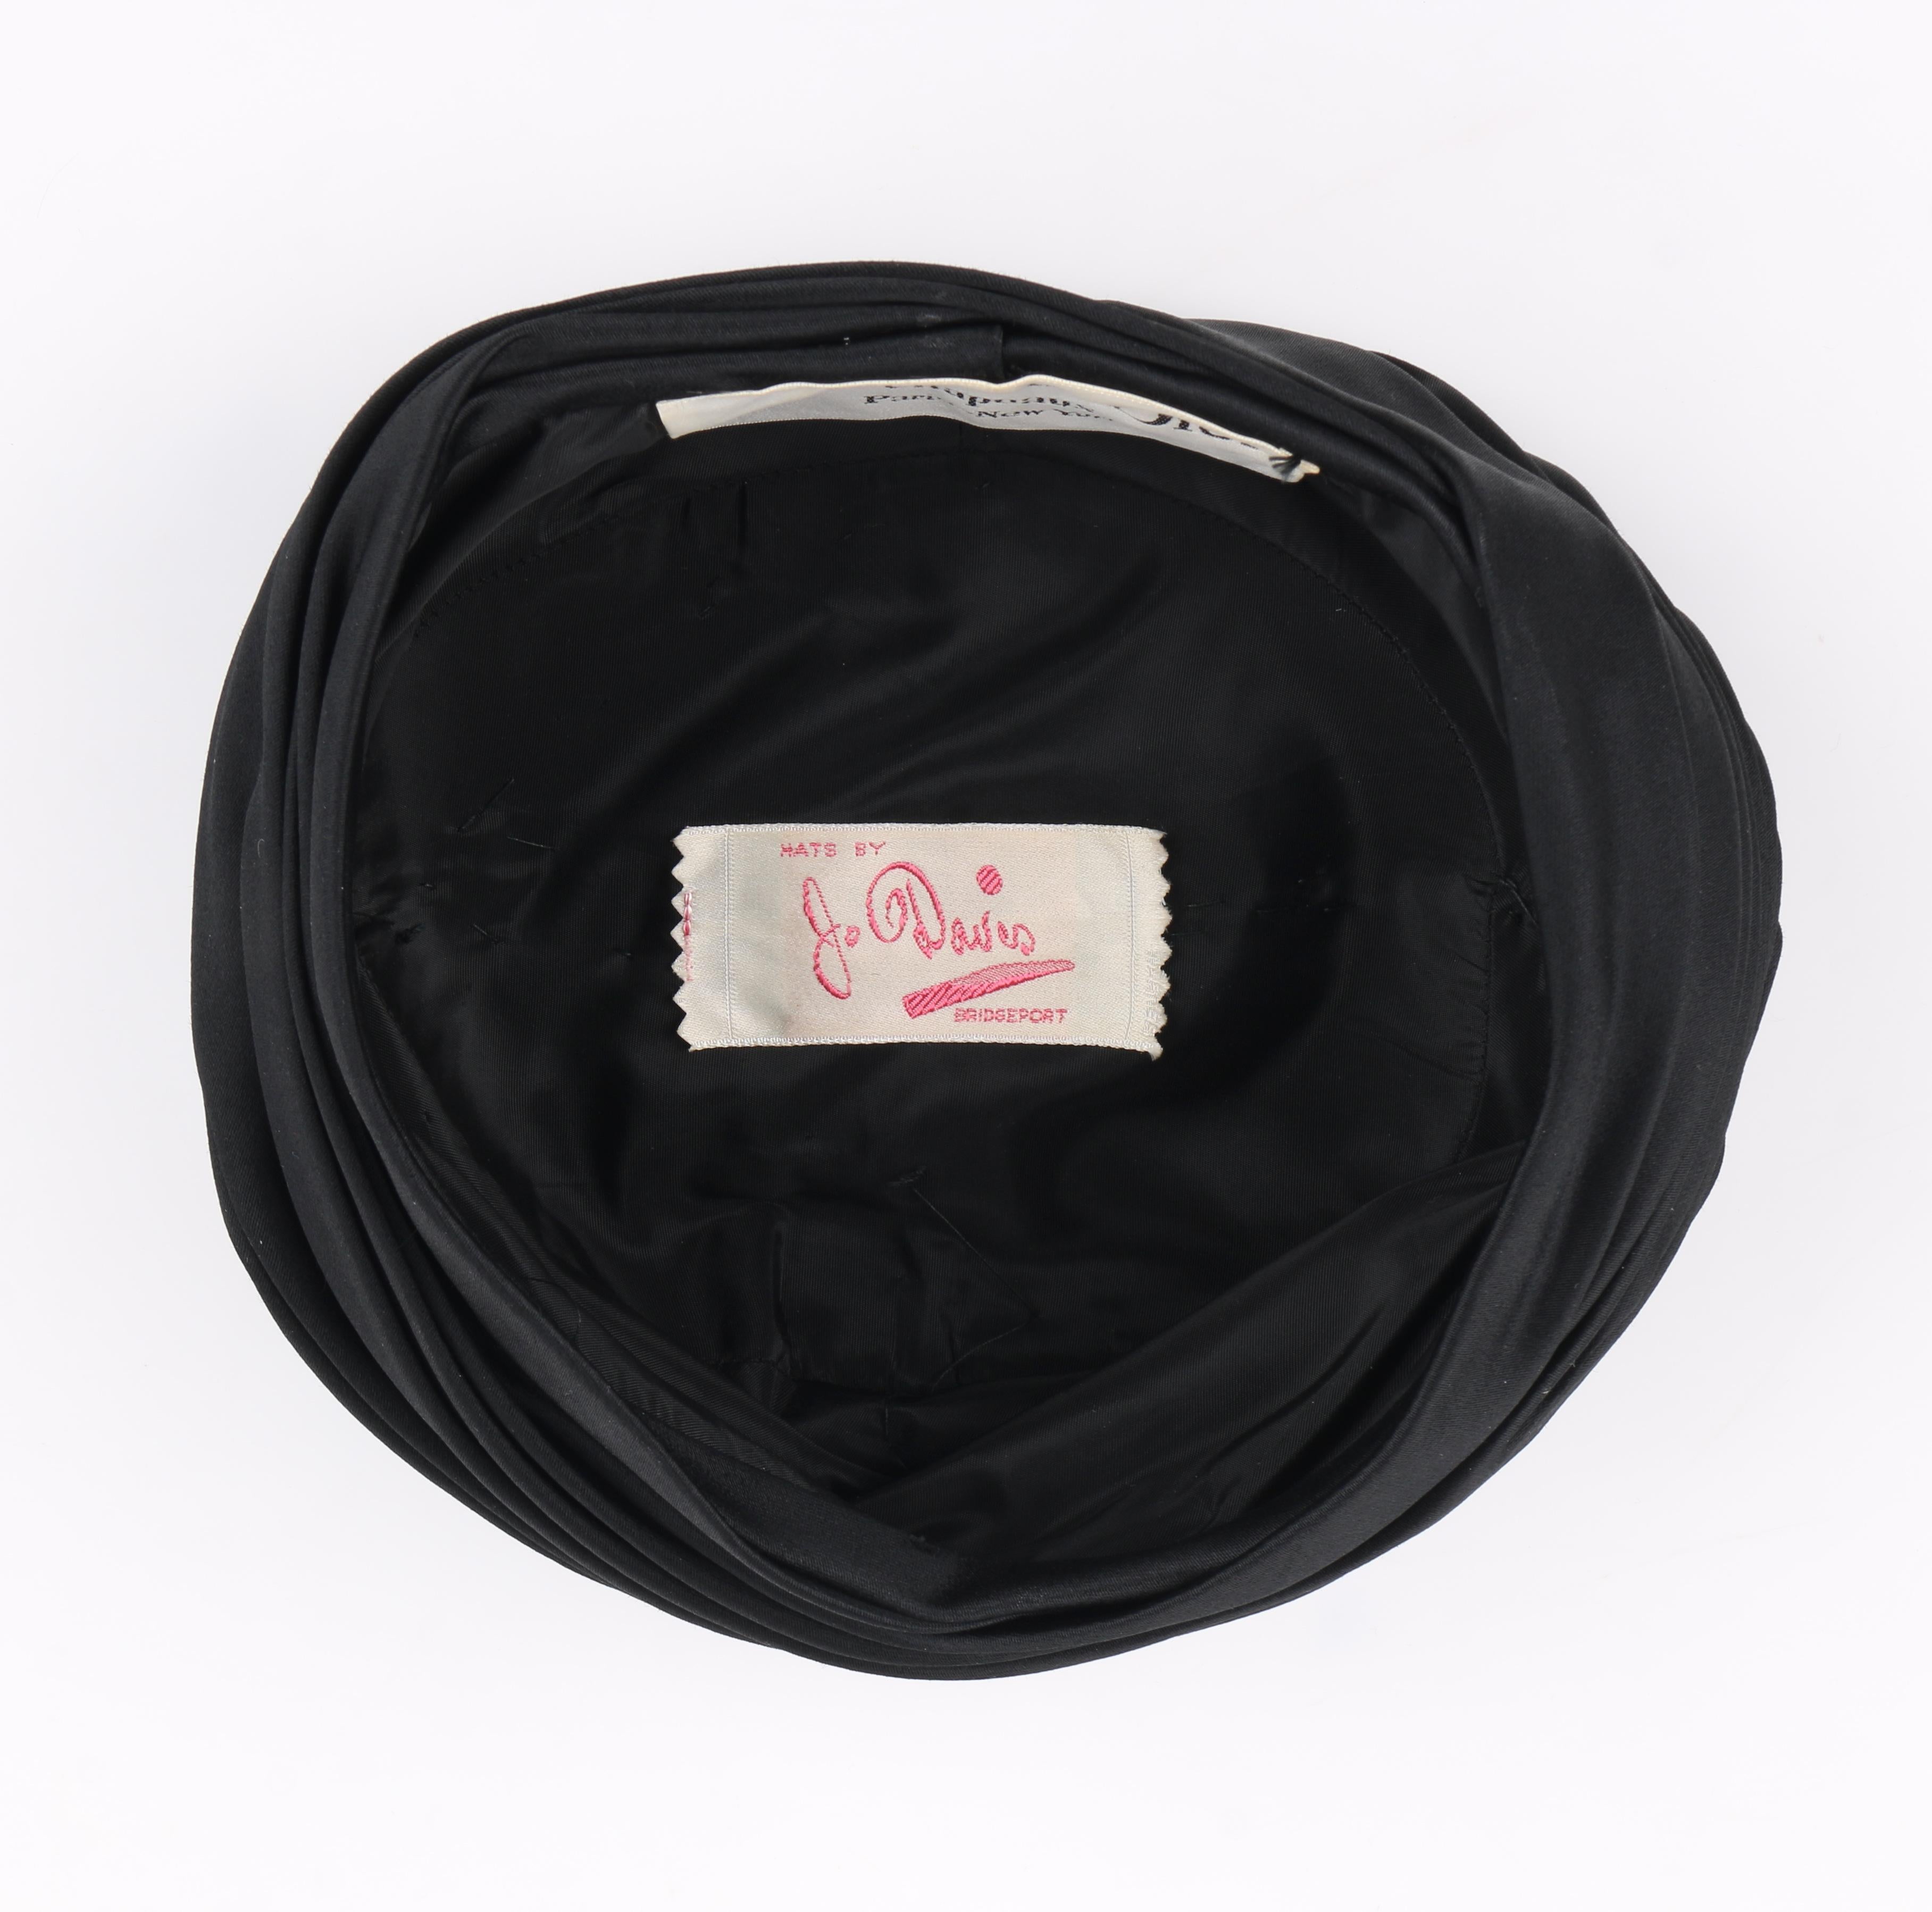 CHRISTIAN DIOR Chapeaux c.1960’s Black Silk Satin Pleated Pillbox Turban Hat 2